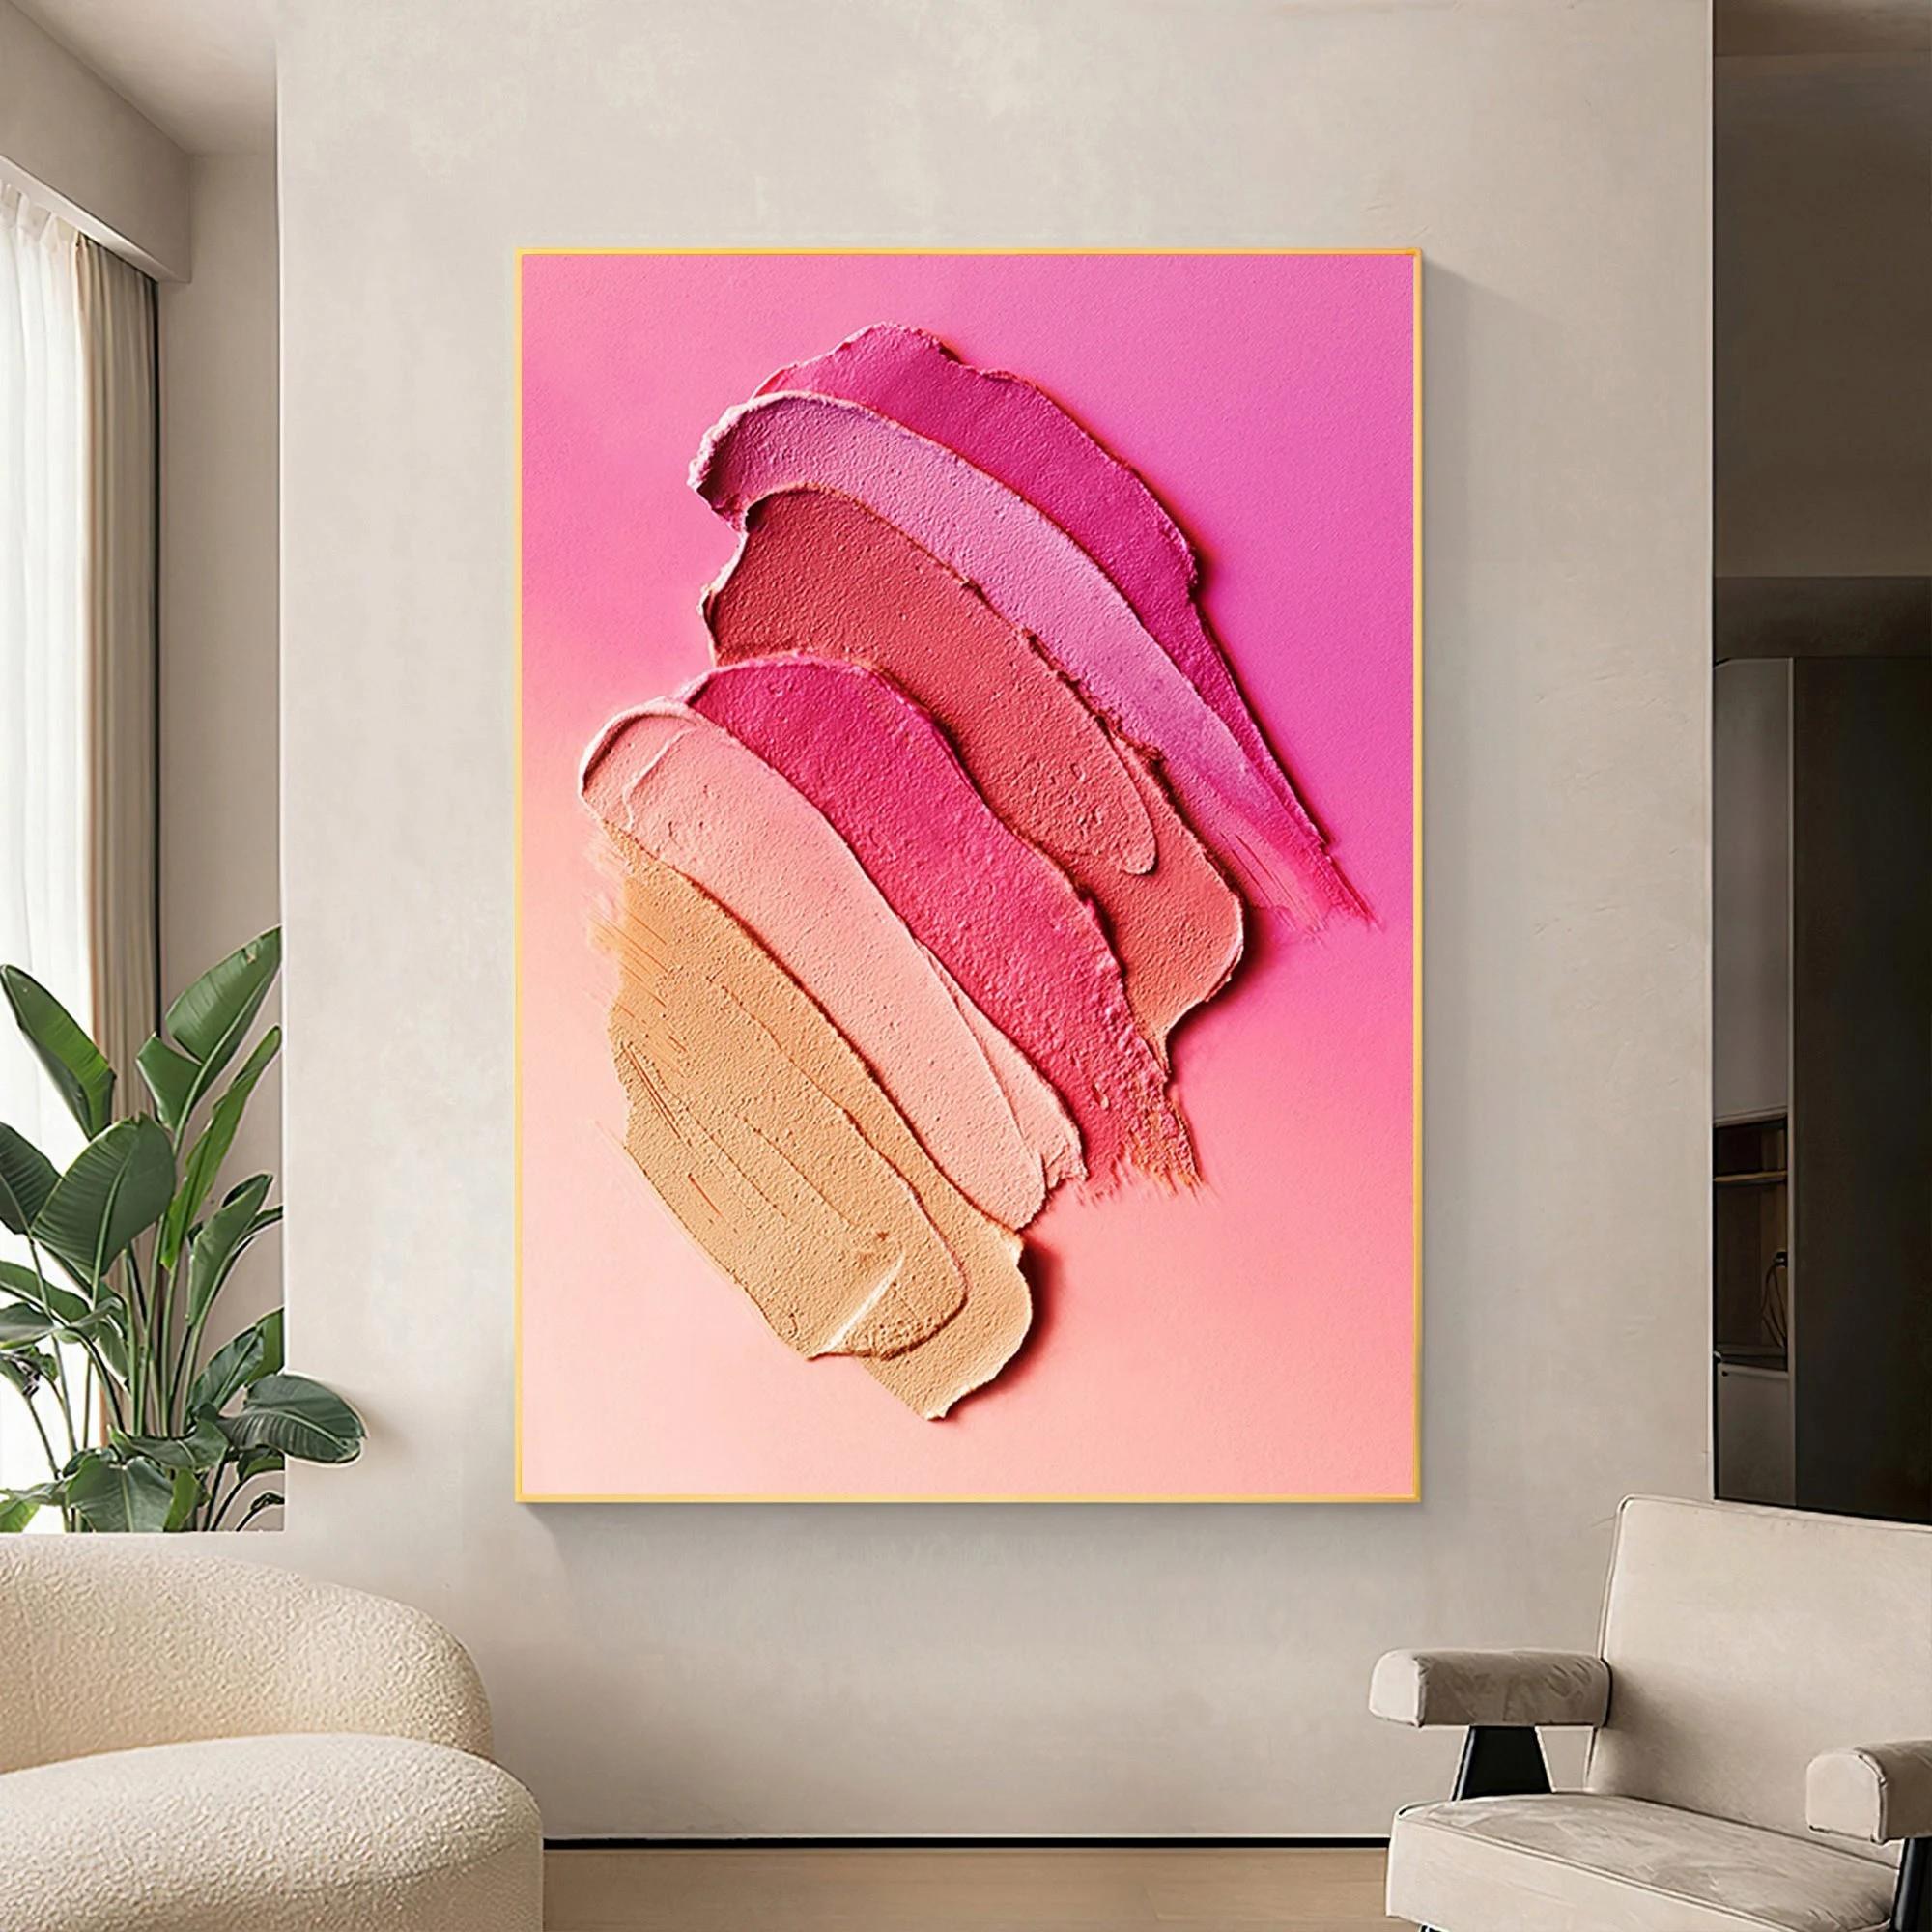 パレットナイフによる抽象的なストロークのピンクの女性の壁アートミニマリズム油絵